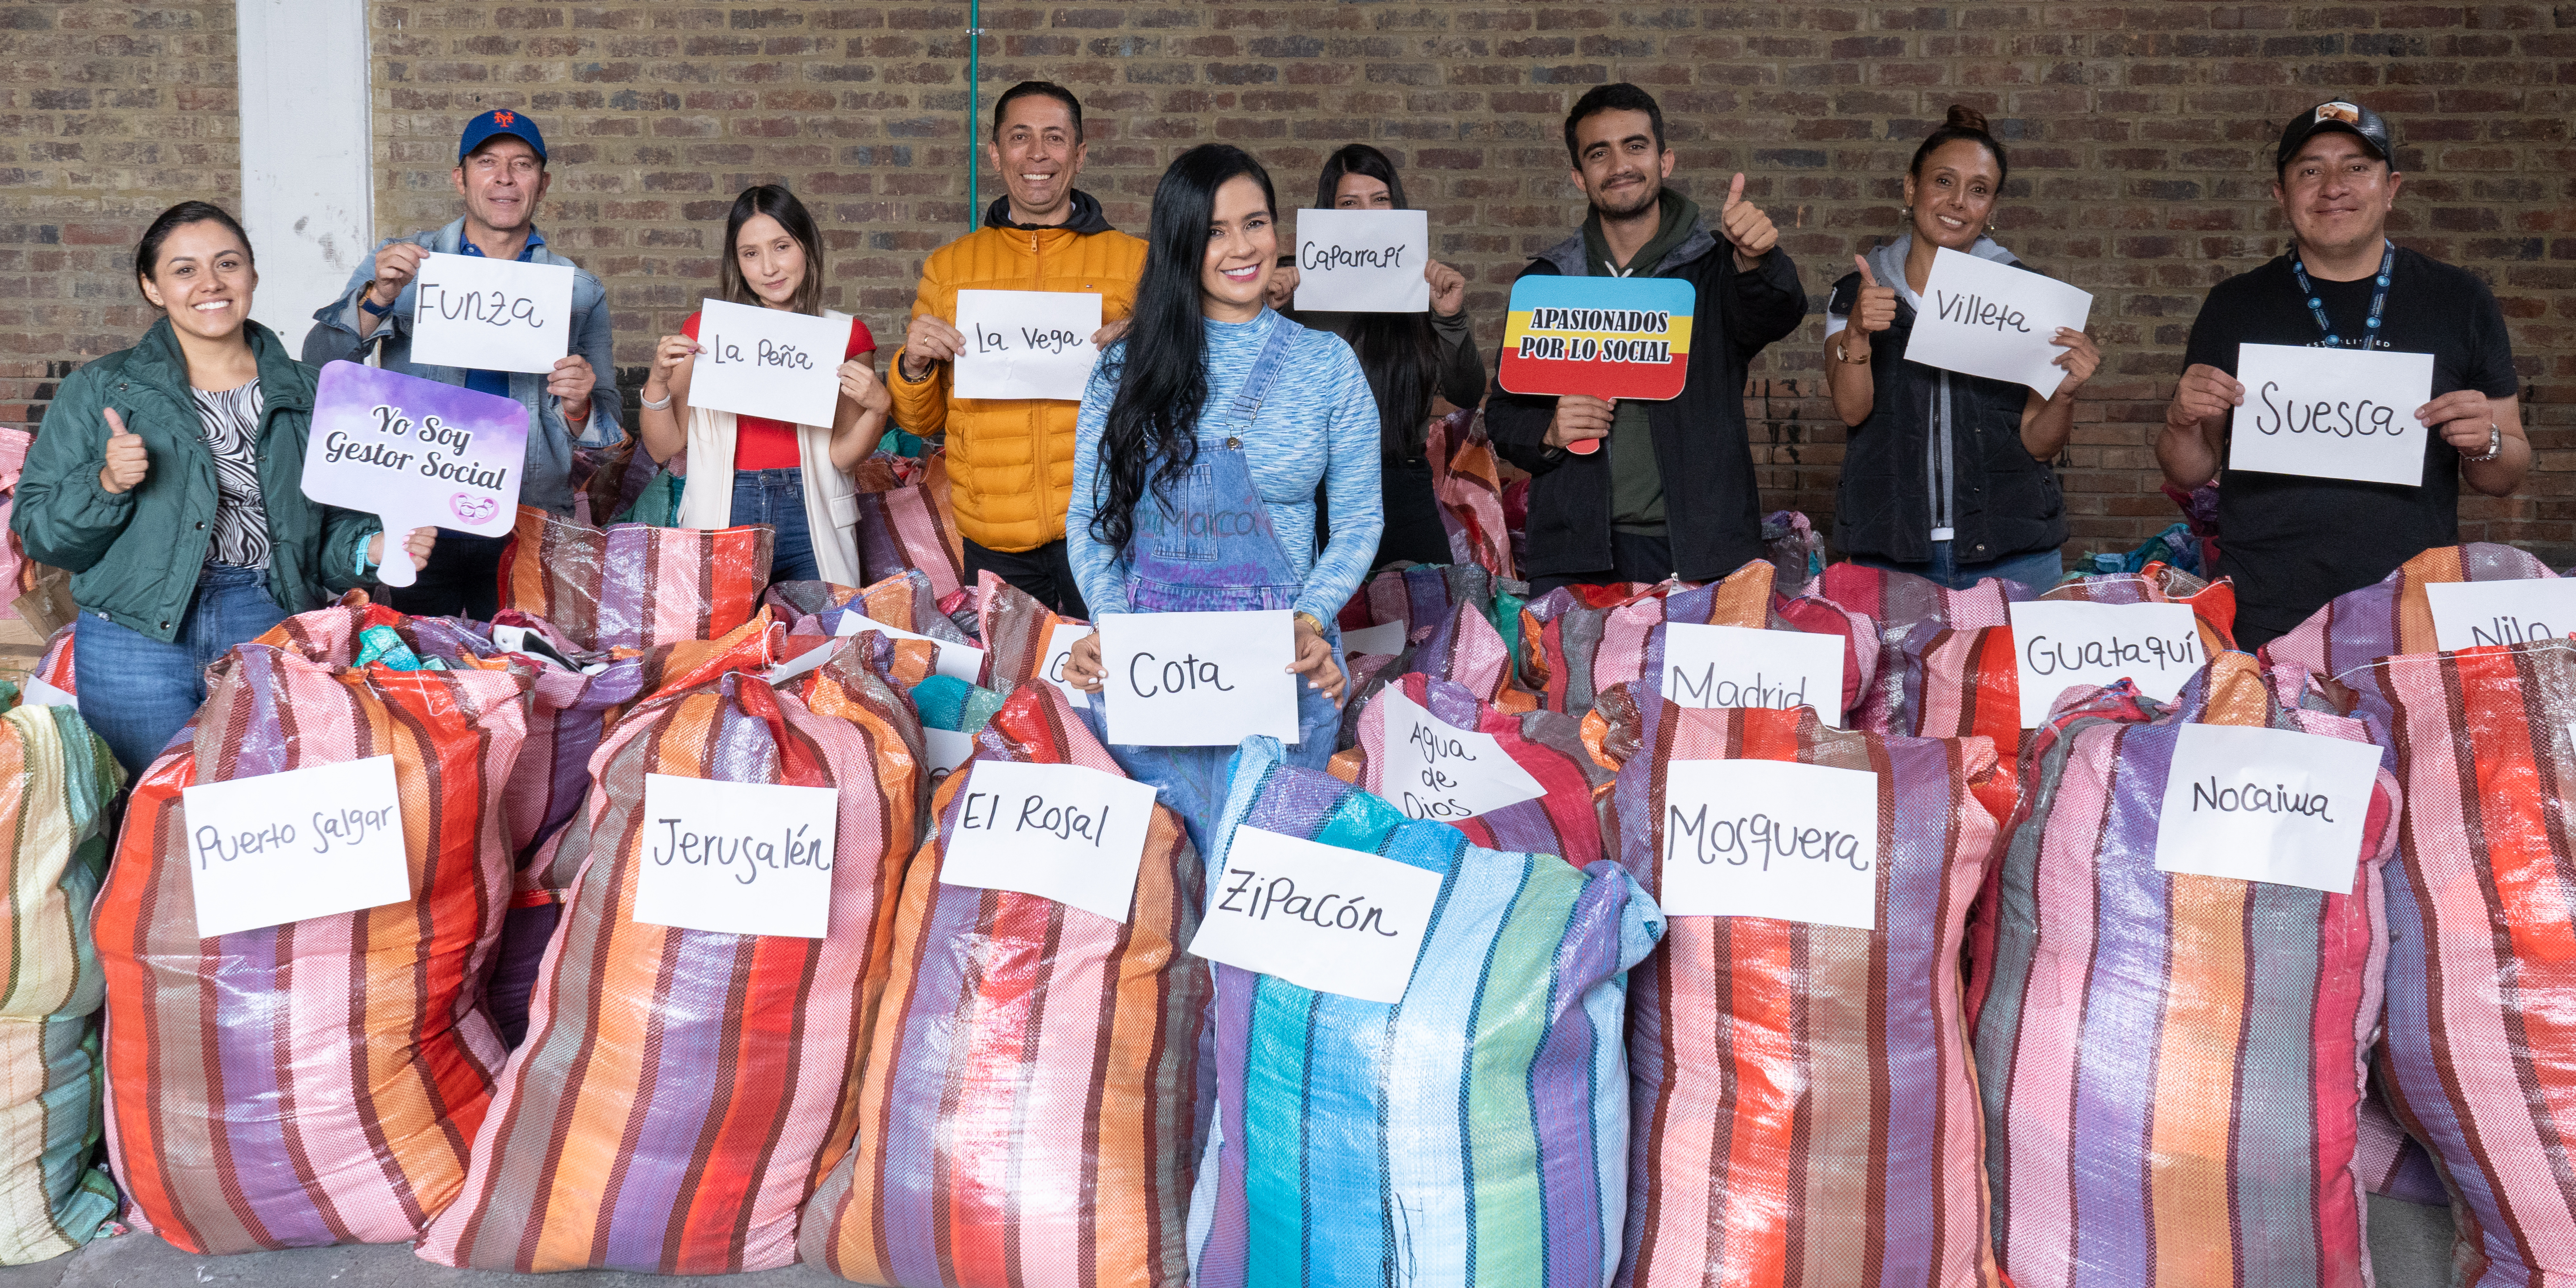 Cundinamarca se viste de solidaridad con 15 mil donaciones de ropa nueva


